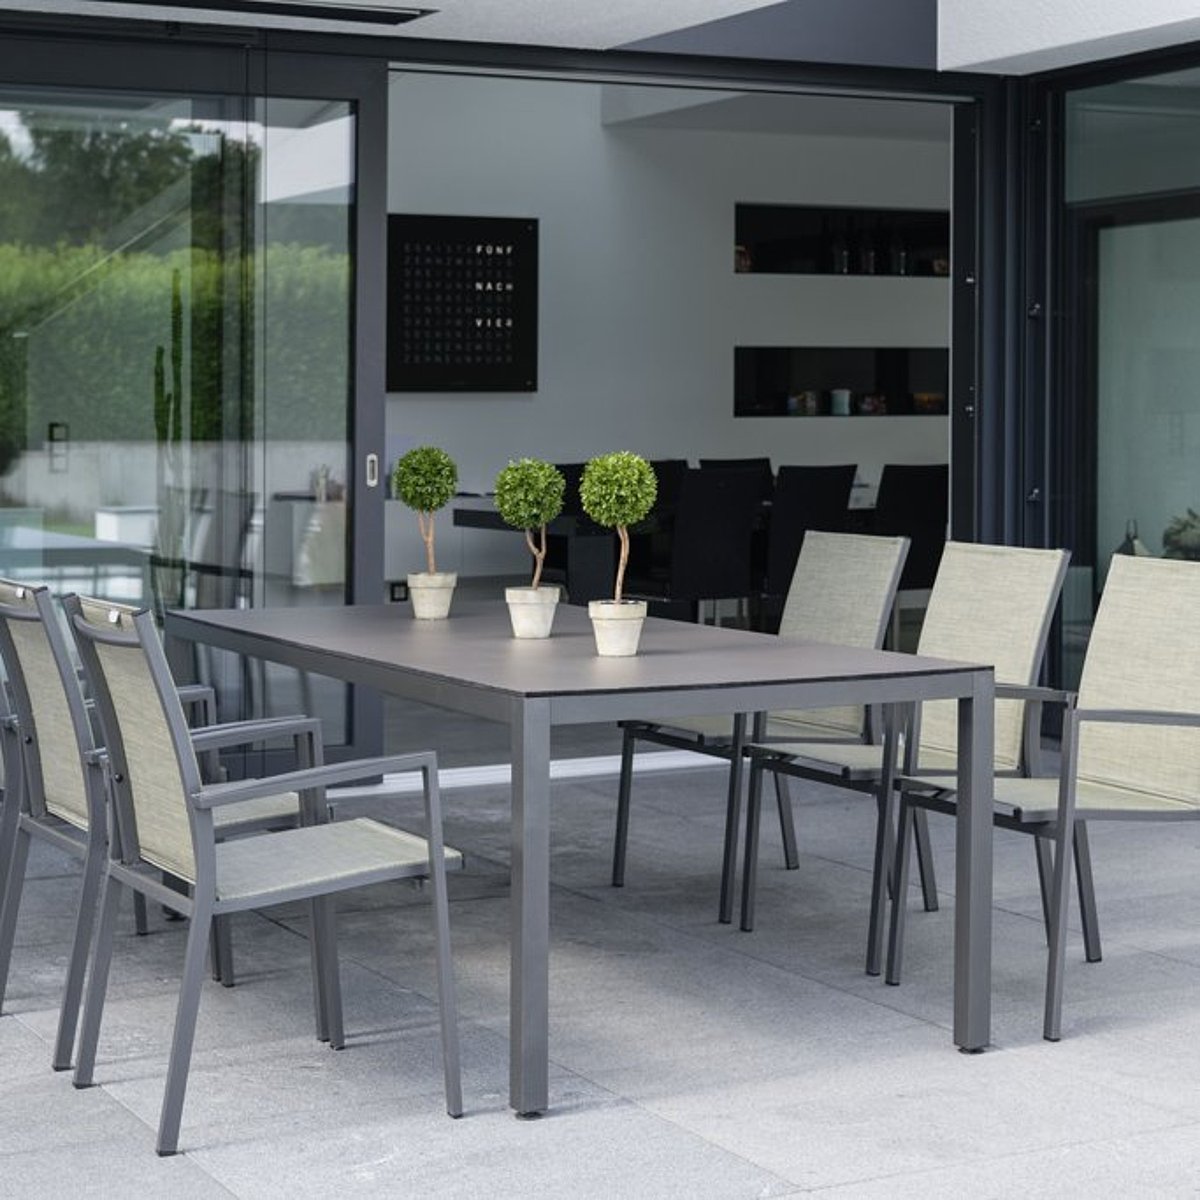 Gartentisch mit 6 Stühlen in dunkelgrau metallic und grünem Bezug